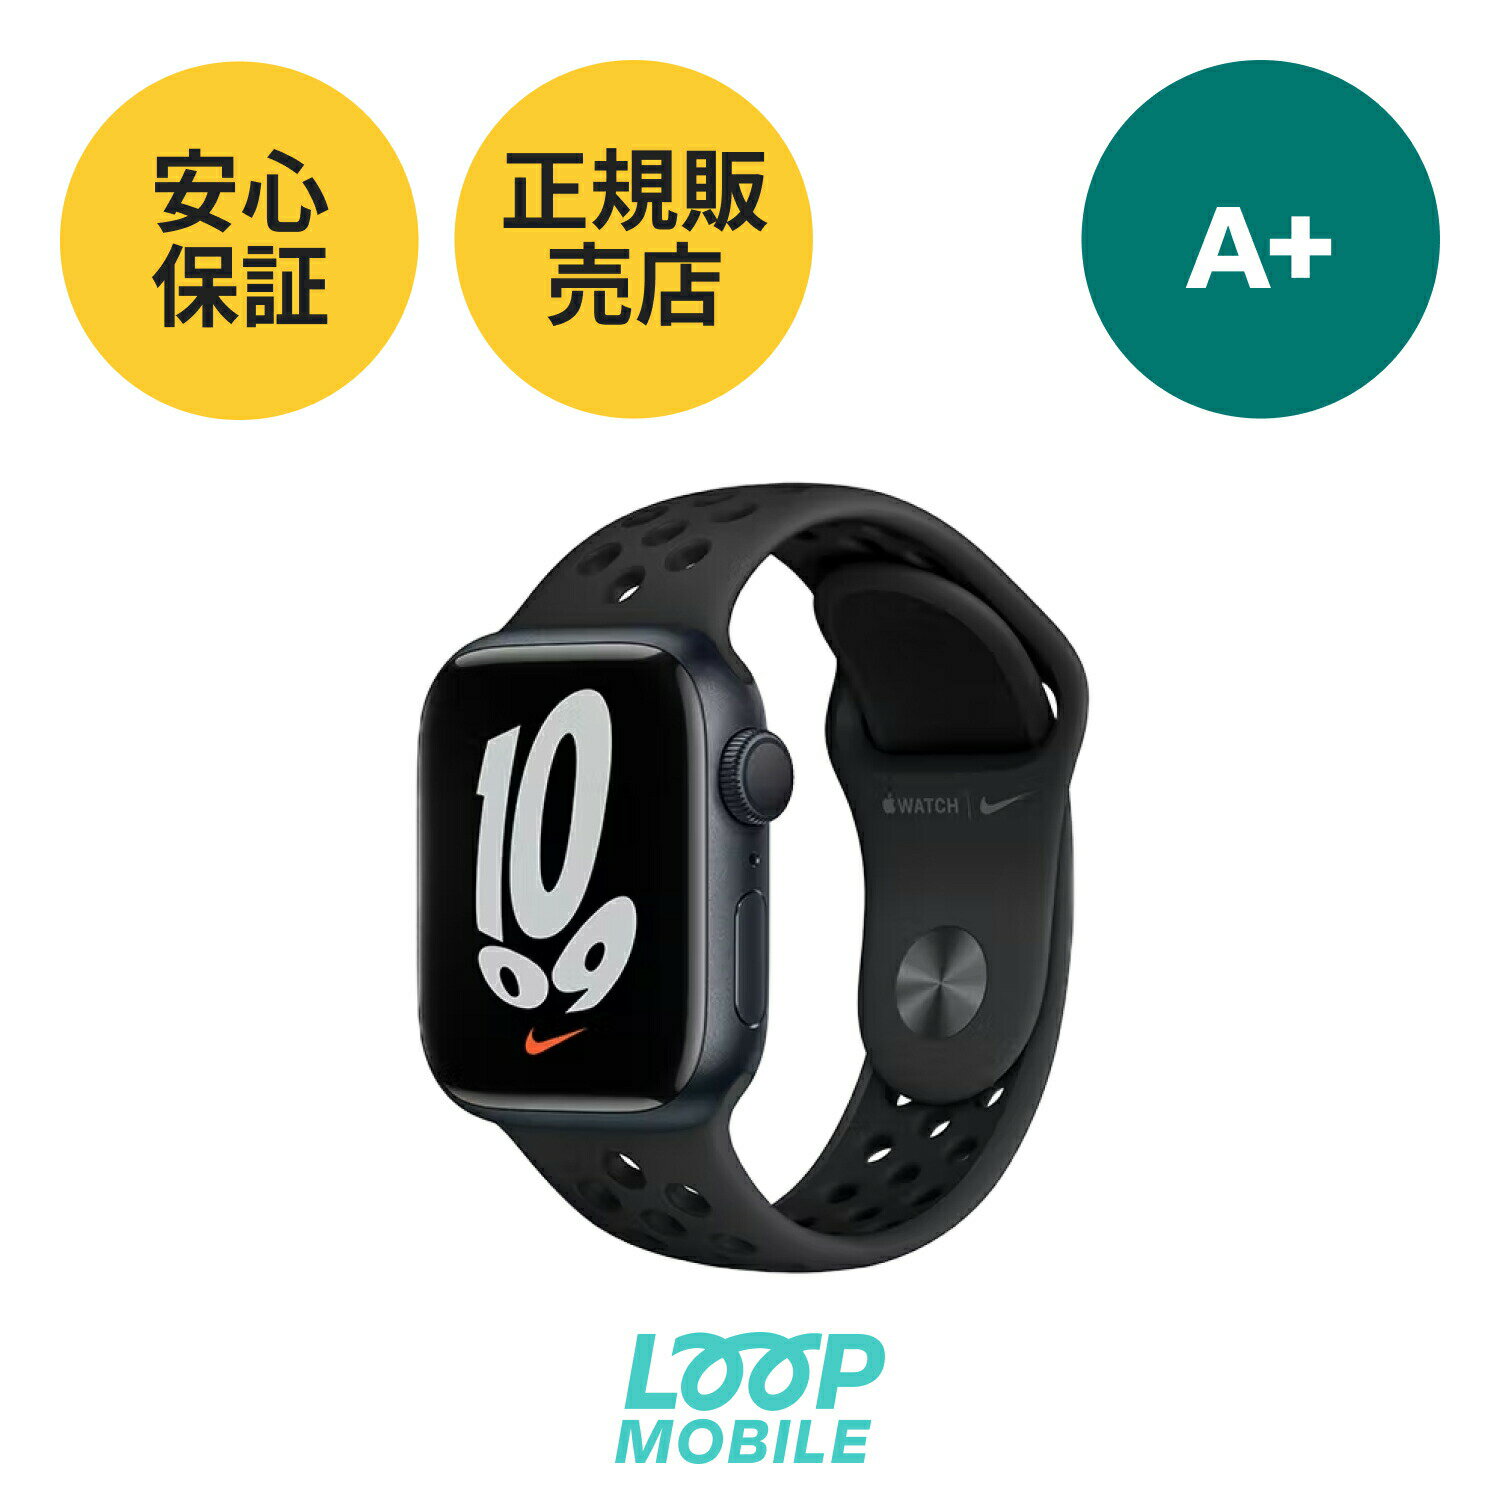 A Apple Watch Series NIKE 7 GPSモデル 41mm Apple認定商品 アップルウォッチ ナイキ ミッドナイト ブラックバンド付き